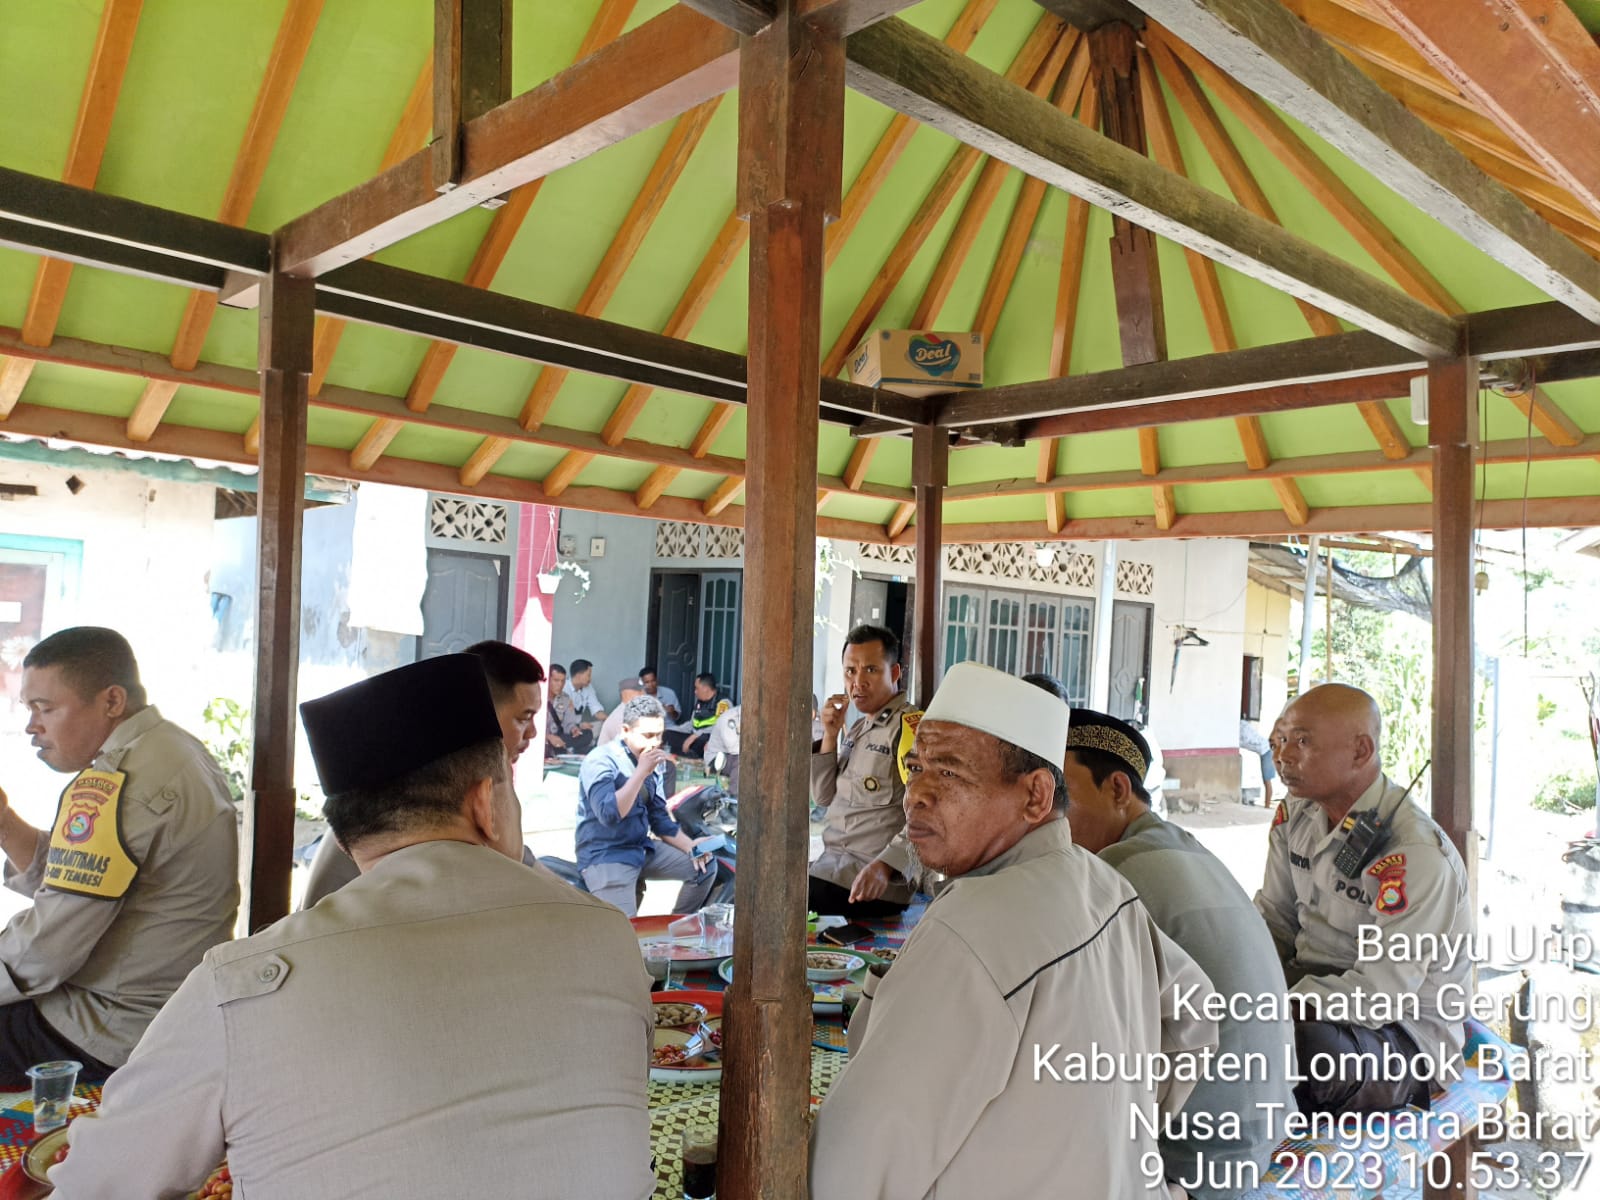 Polsek Gerung Gelar Program Jumat Curhat Polri dengan Warga Dusun Sambi Ratik